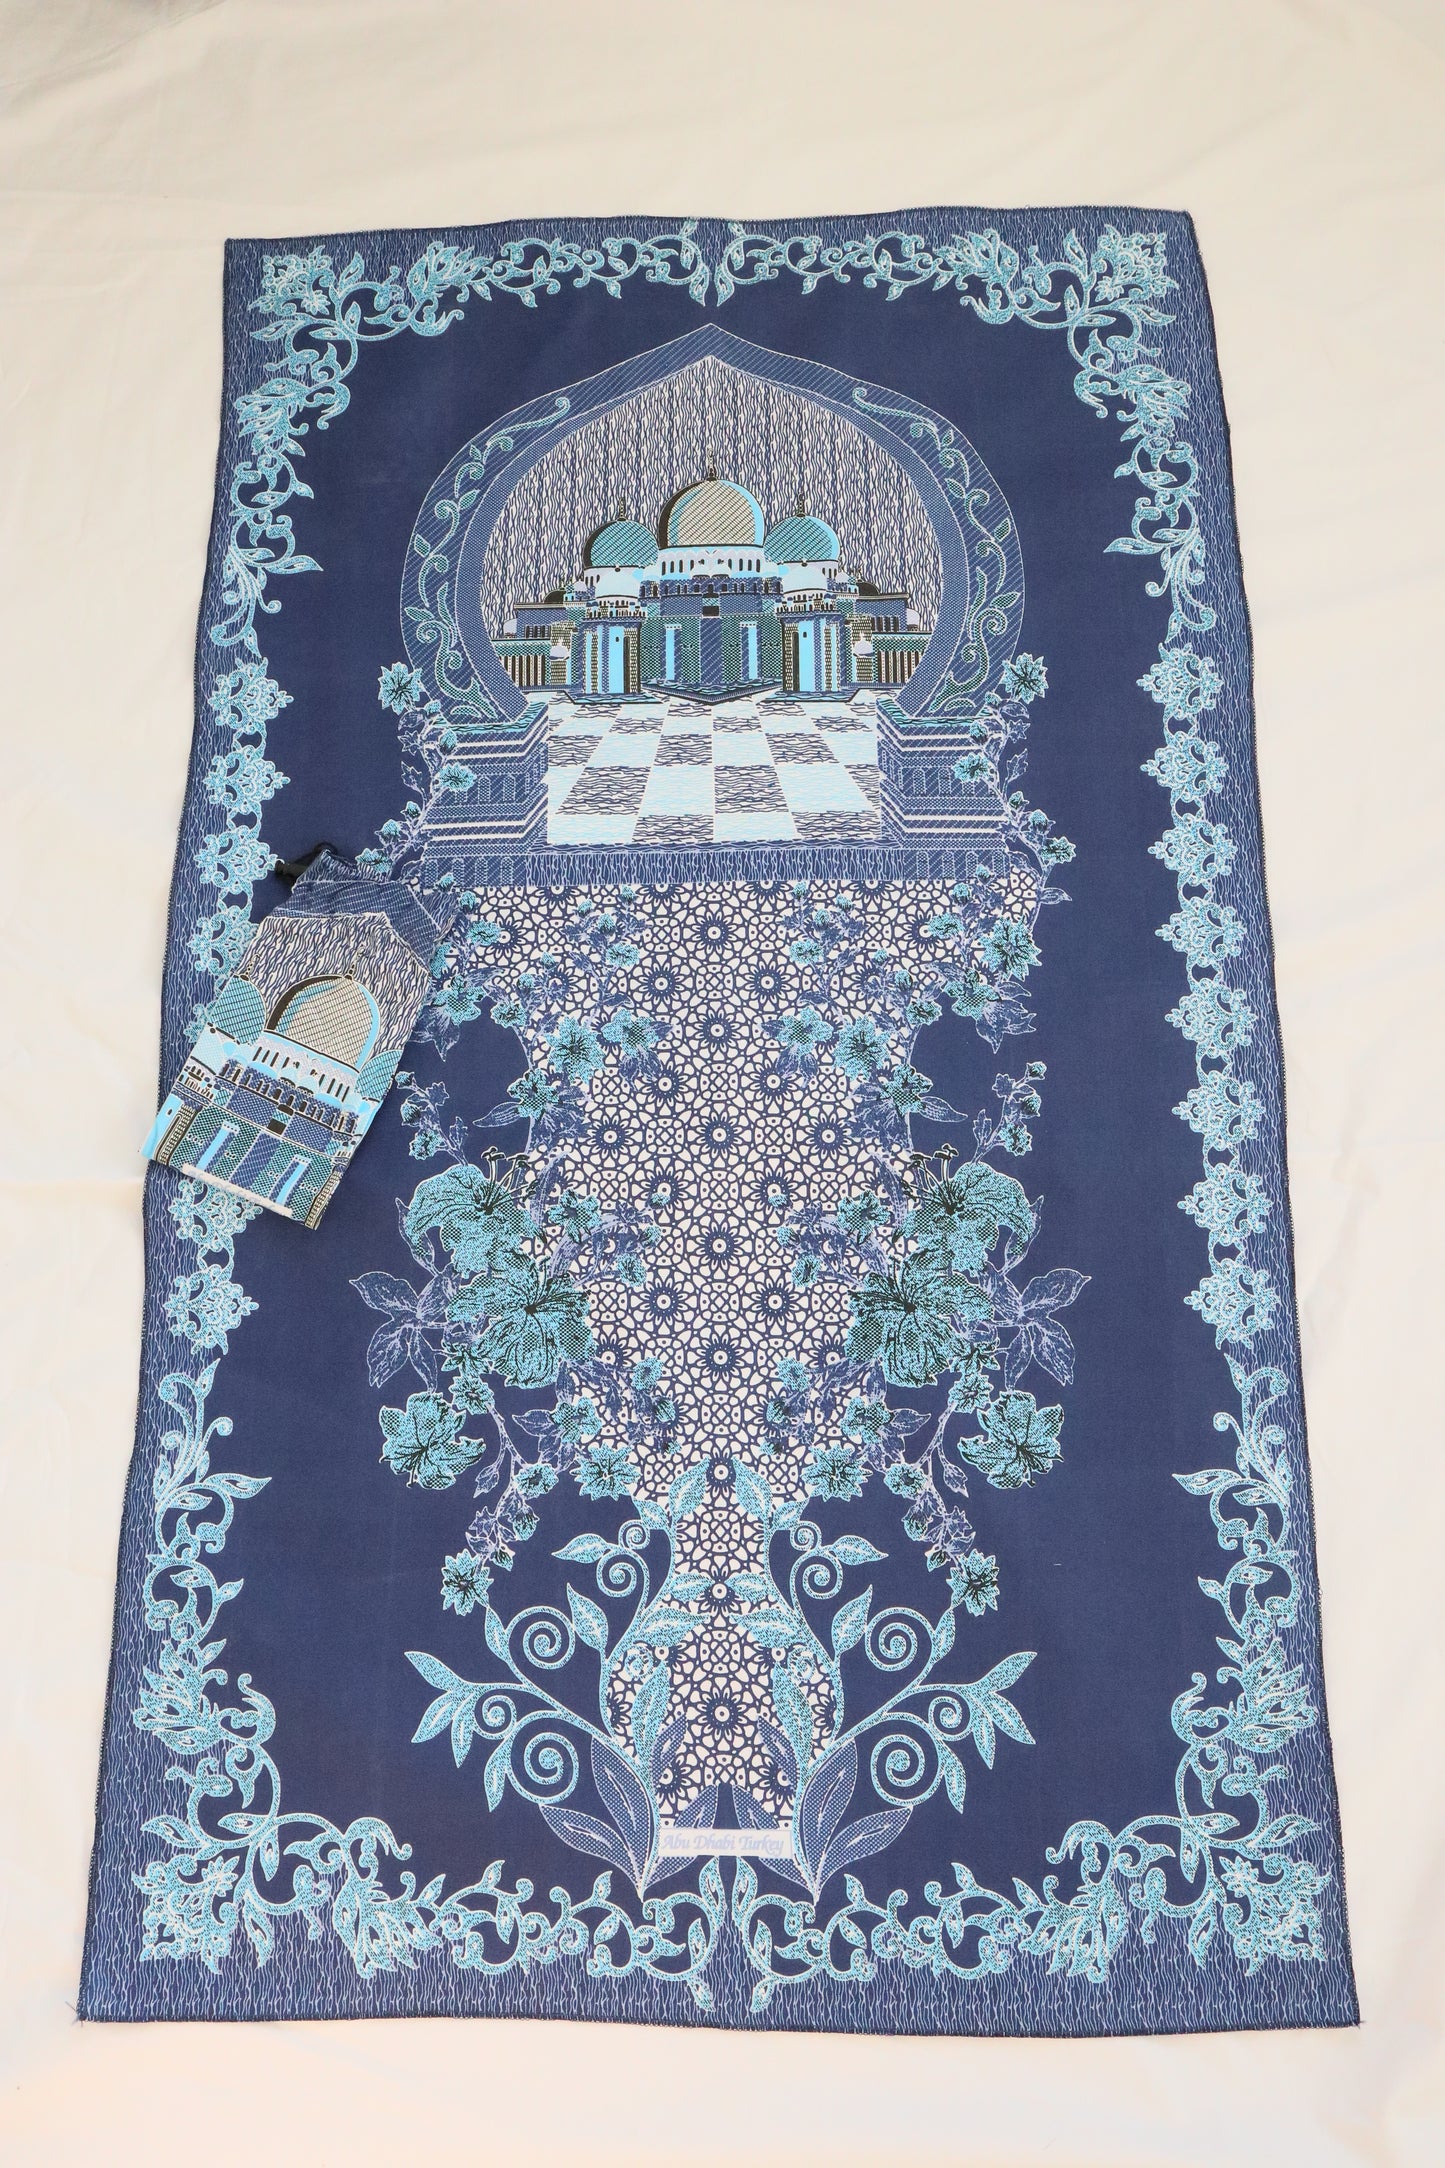 ABU DHABI Pocket/Travel Prayer Mats